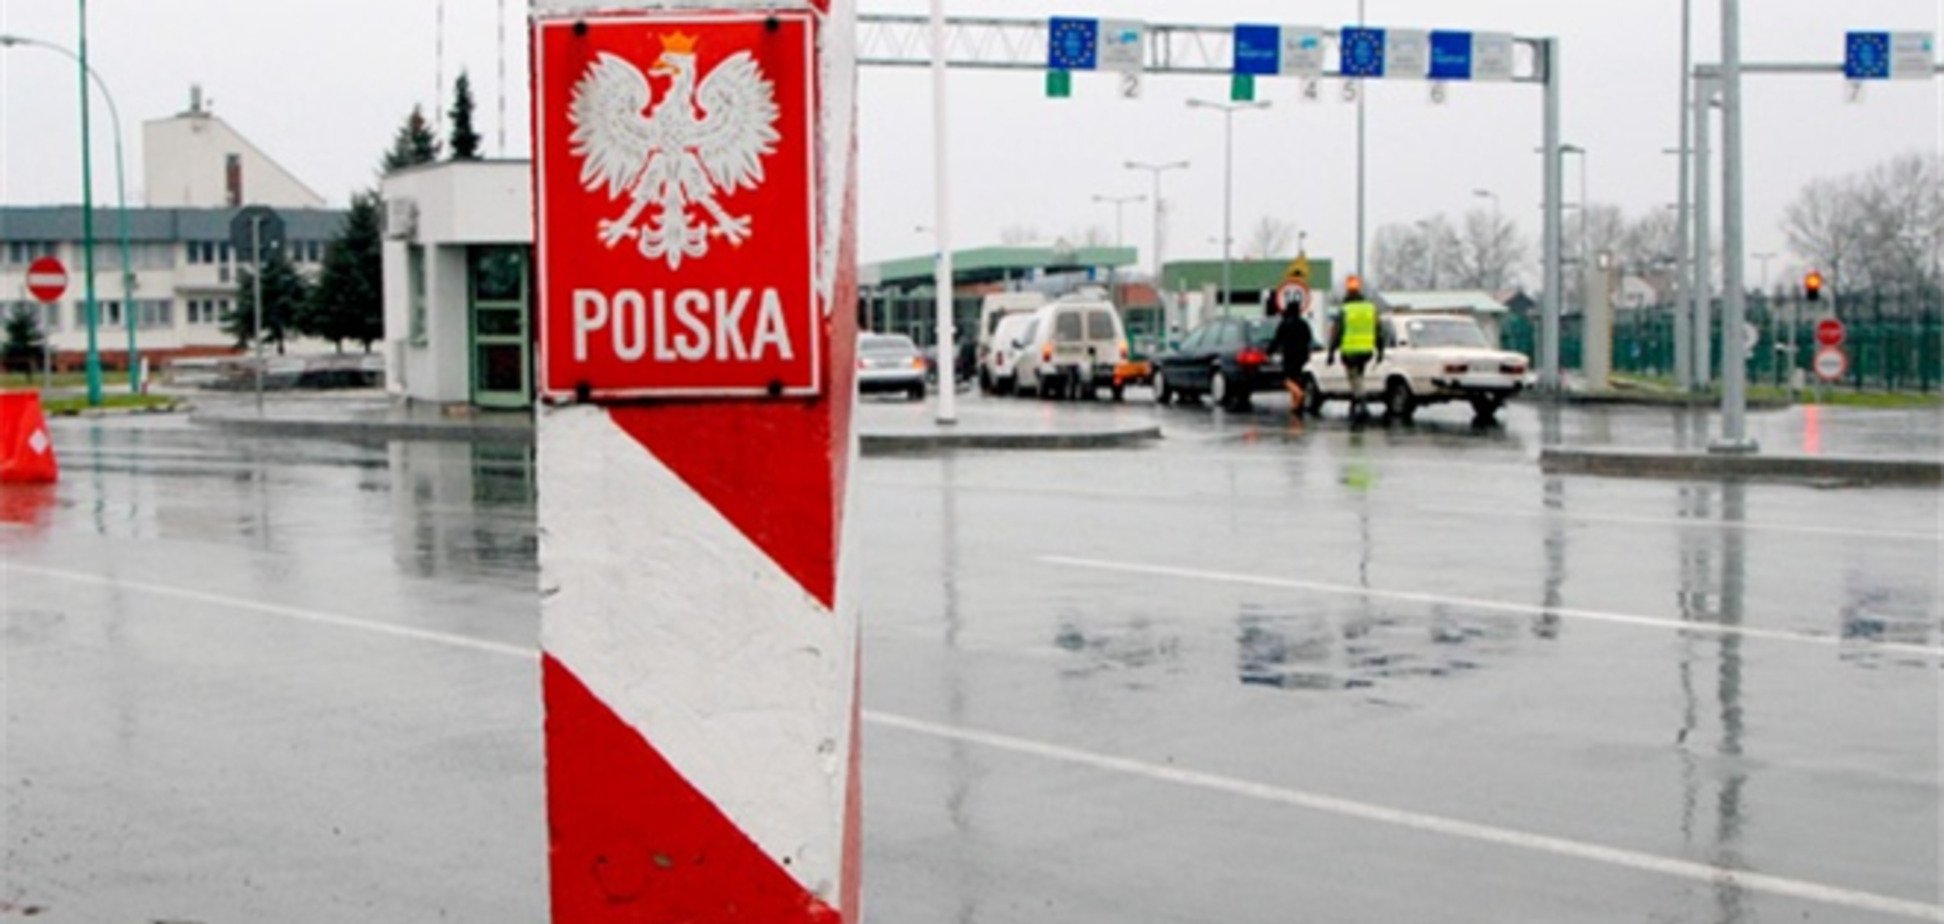 Українець збив шлагбаум, намагаючись прорватися до Польщі з контрабандою